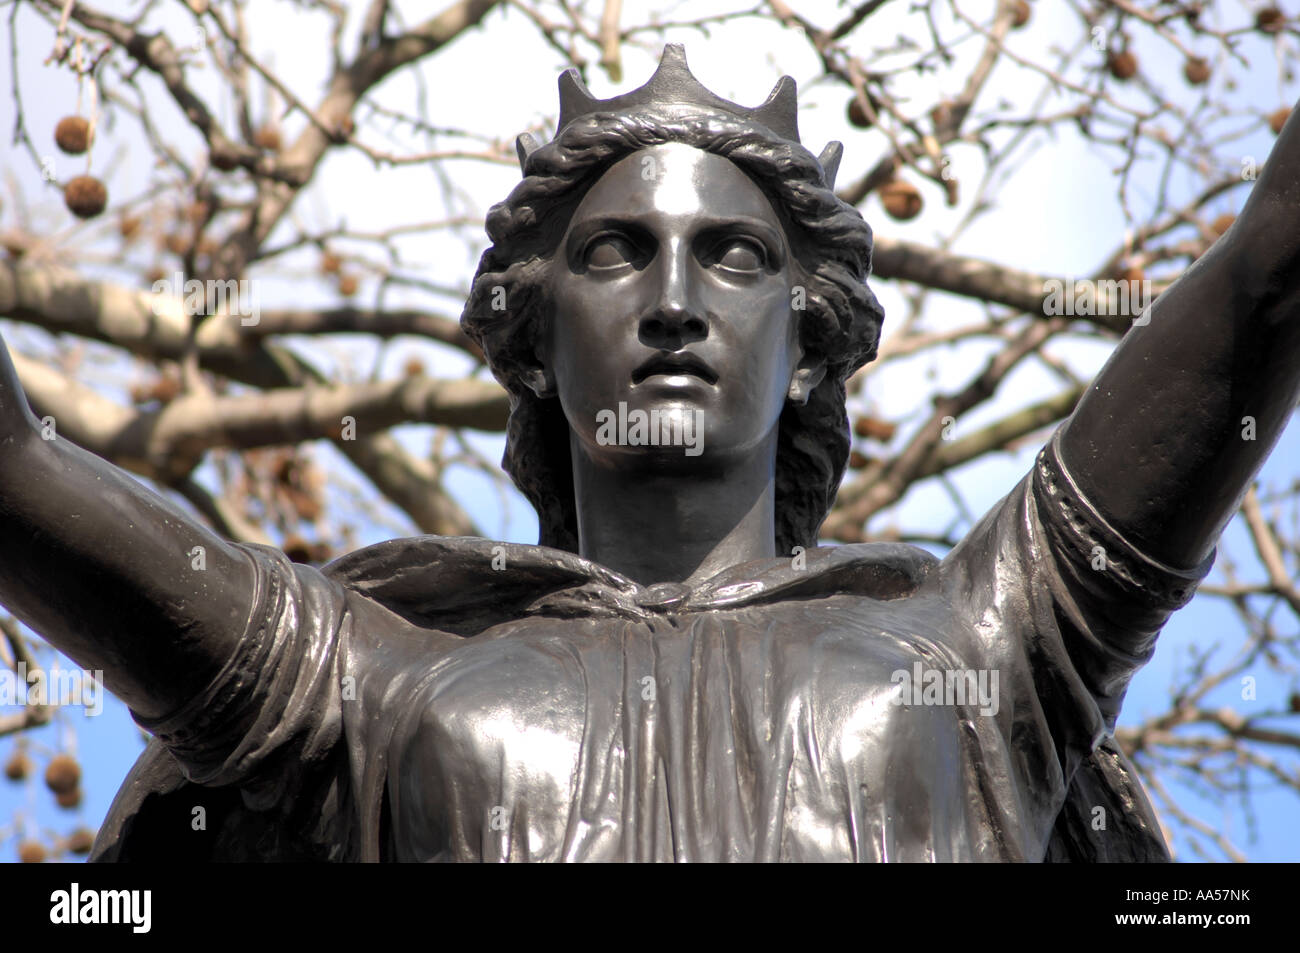 Boadicea et ses filles Statue, Westminster, Londres, Royaume-Uni. Boudicca Reine de la tribu Iceni des Britanniques, s'est rebellée contre le régime romain. Banque D'Images